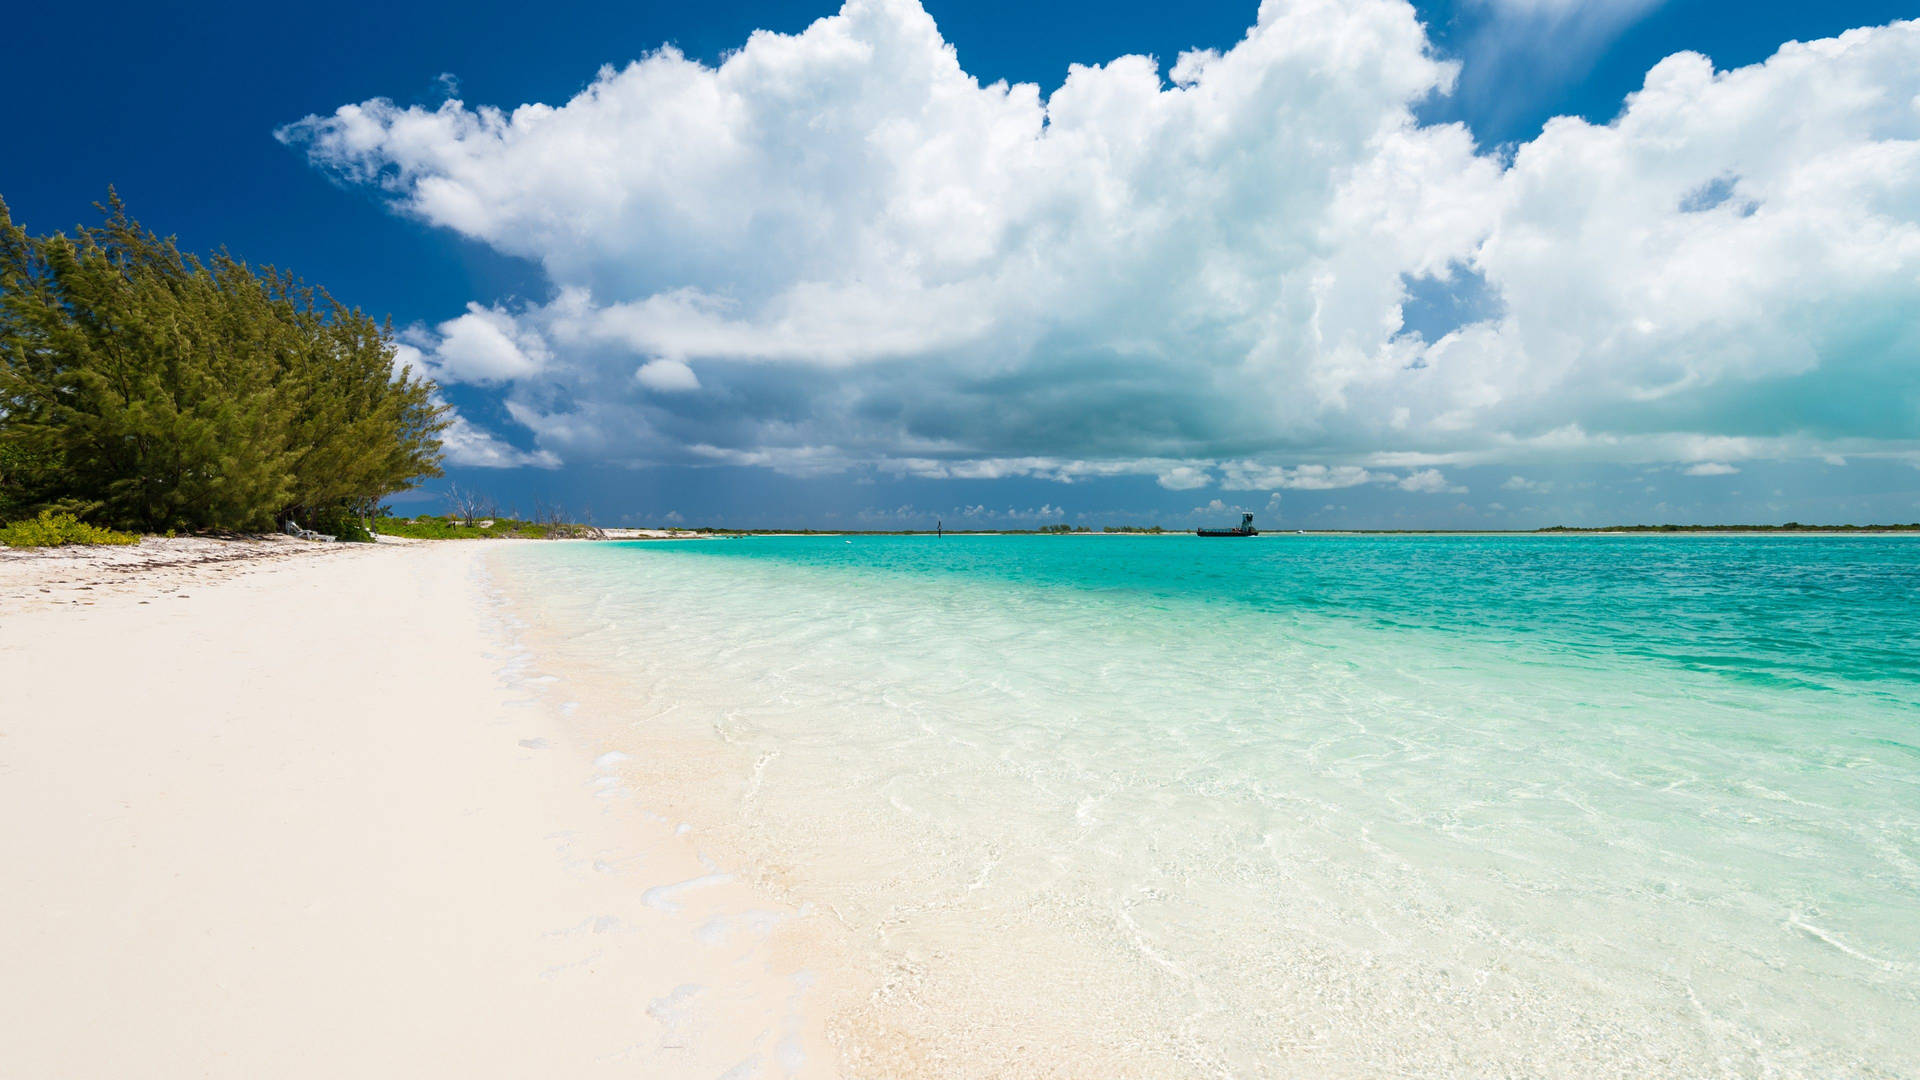 Tường thuật Caicos và Turks - Những hòn đảo Caicos và Turks nổi tiếng với cảnh quan tuyệt đẹp và nền văn hóa đặc biệt của miền Caribe. Hãy xem bức hình này để khám phá sự quyến rũ của các bãi biển trắng tinh khiết và những con sóng vỗ dồn đều suốt cả ngày.